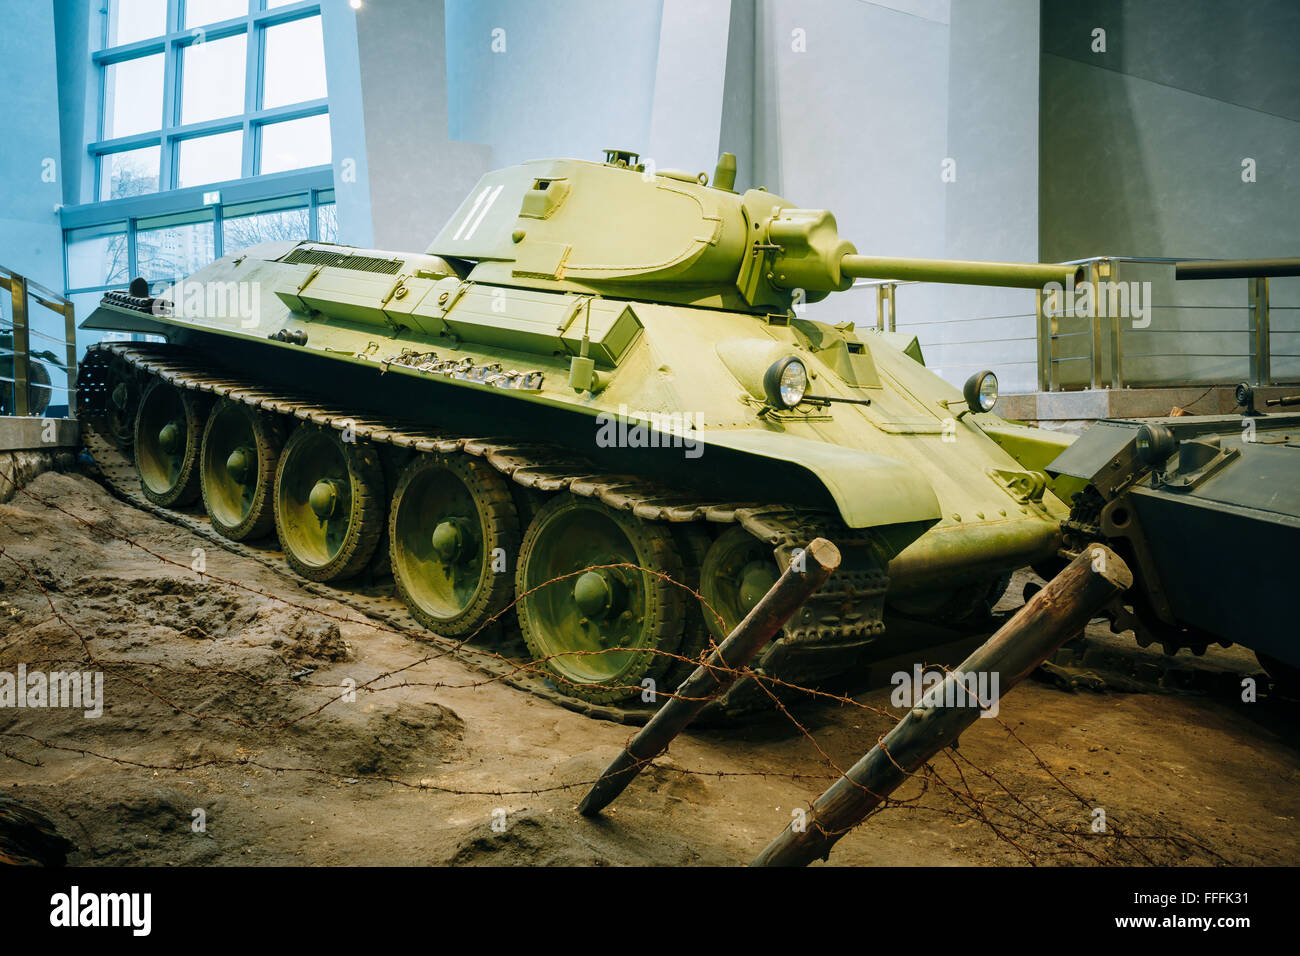 Minsk, Bielorussia - 20 dicembre 2015: un sovietico medium russa serbatoio T-34 in bielorusso Museo della Grande Guerra Patriottica di Minsk, Belaru Foto Stock